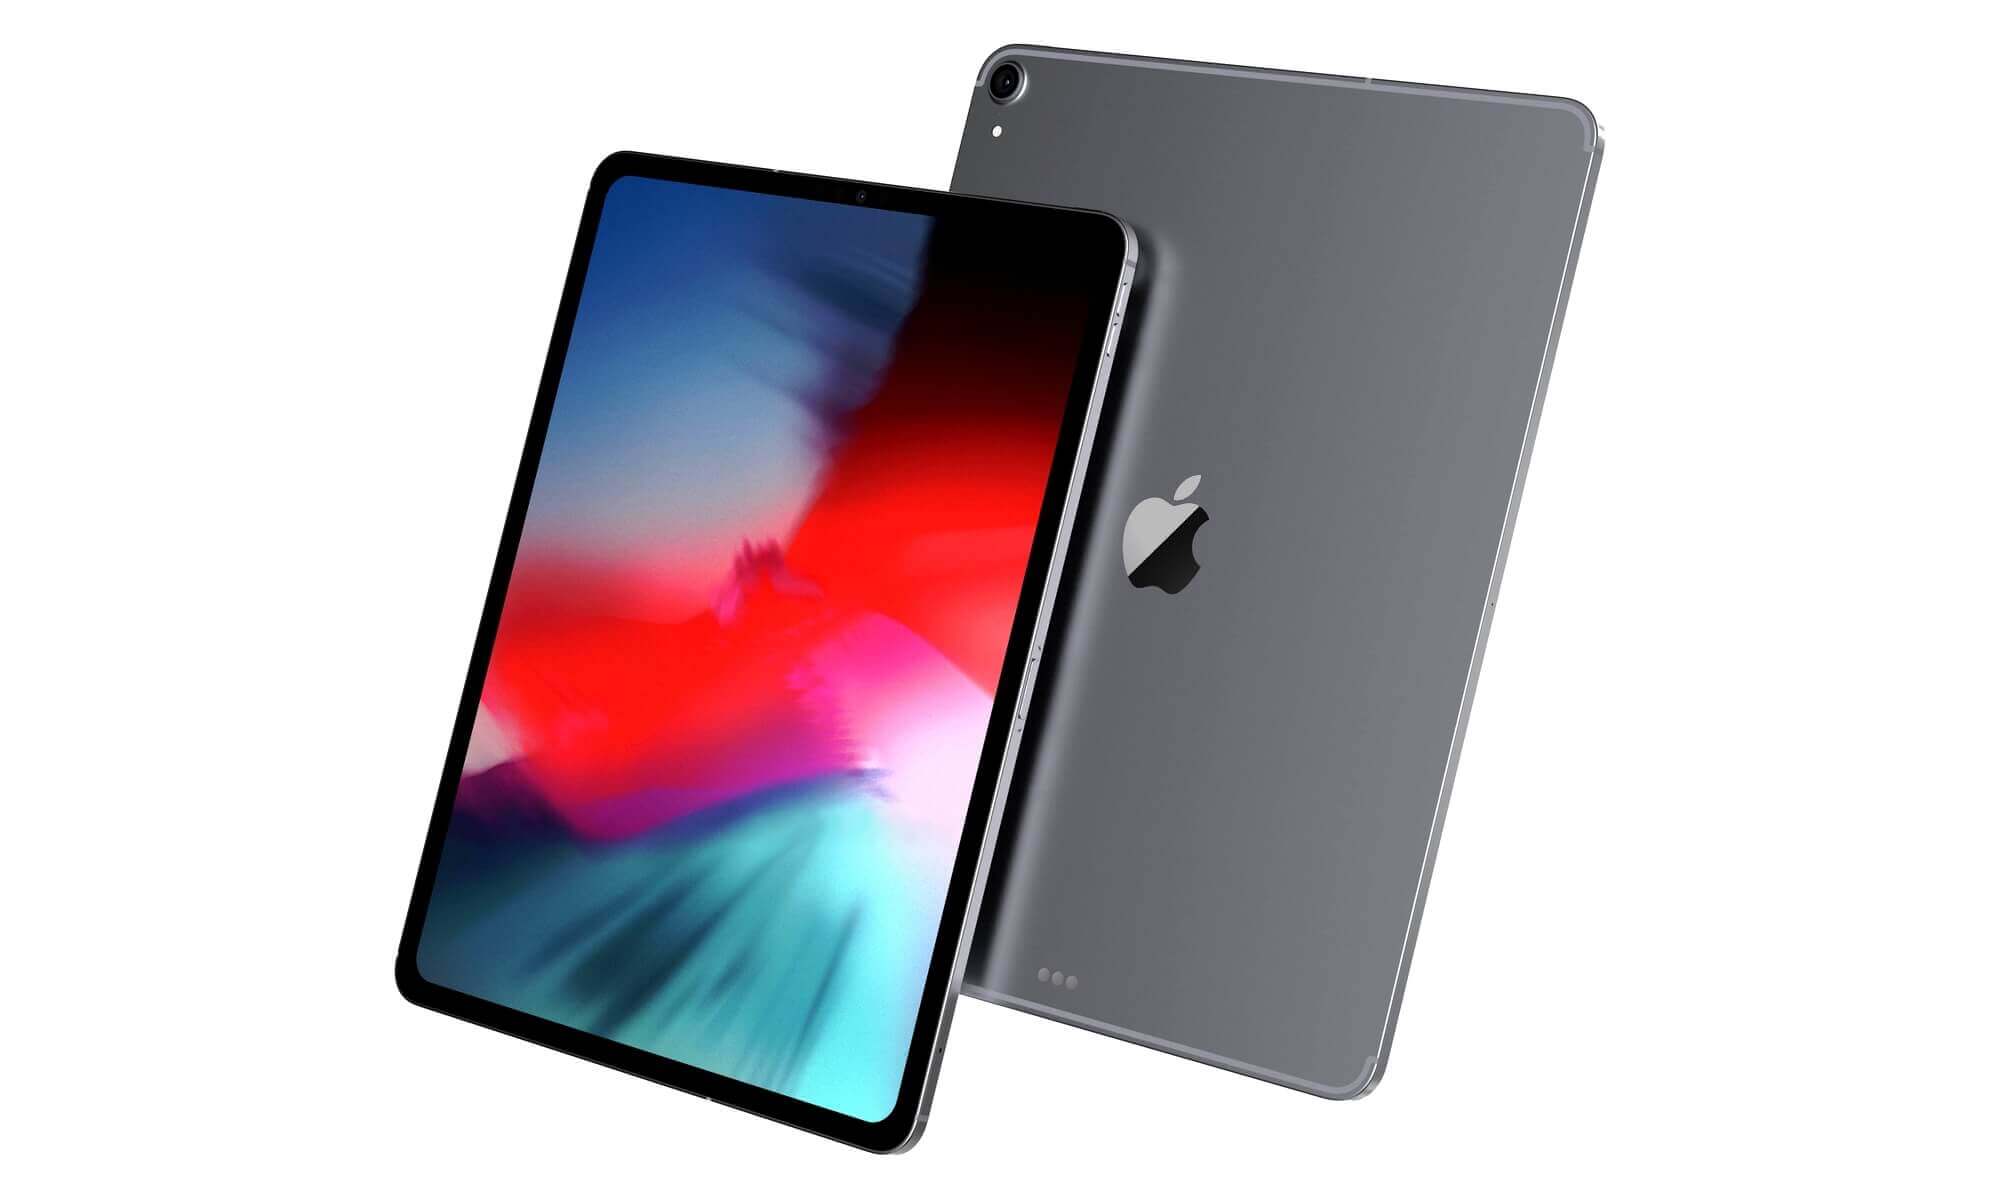 iPad Pro 2018 получит разъем USB-C и поддержку внешних дисплеев 4K